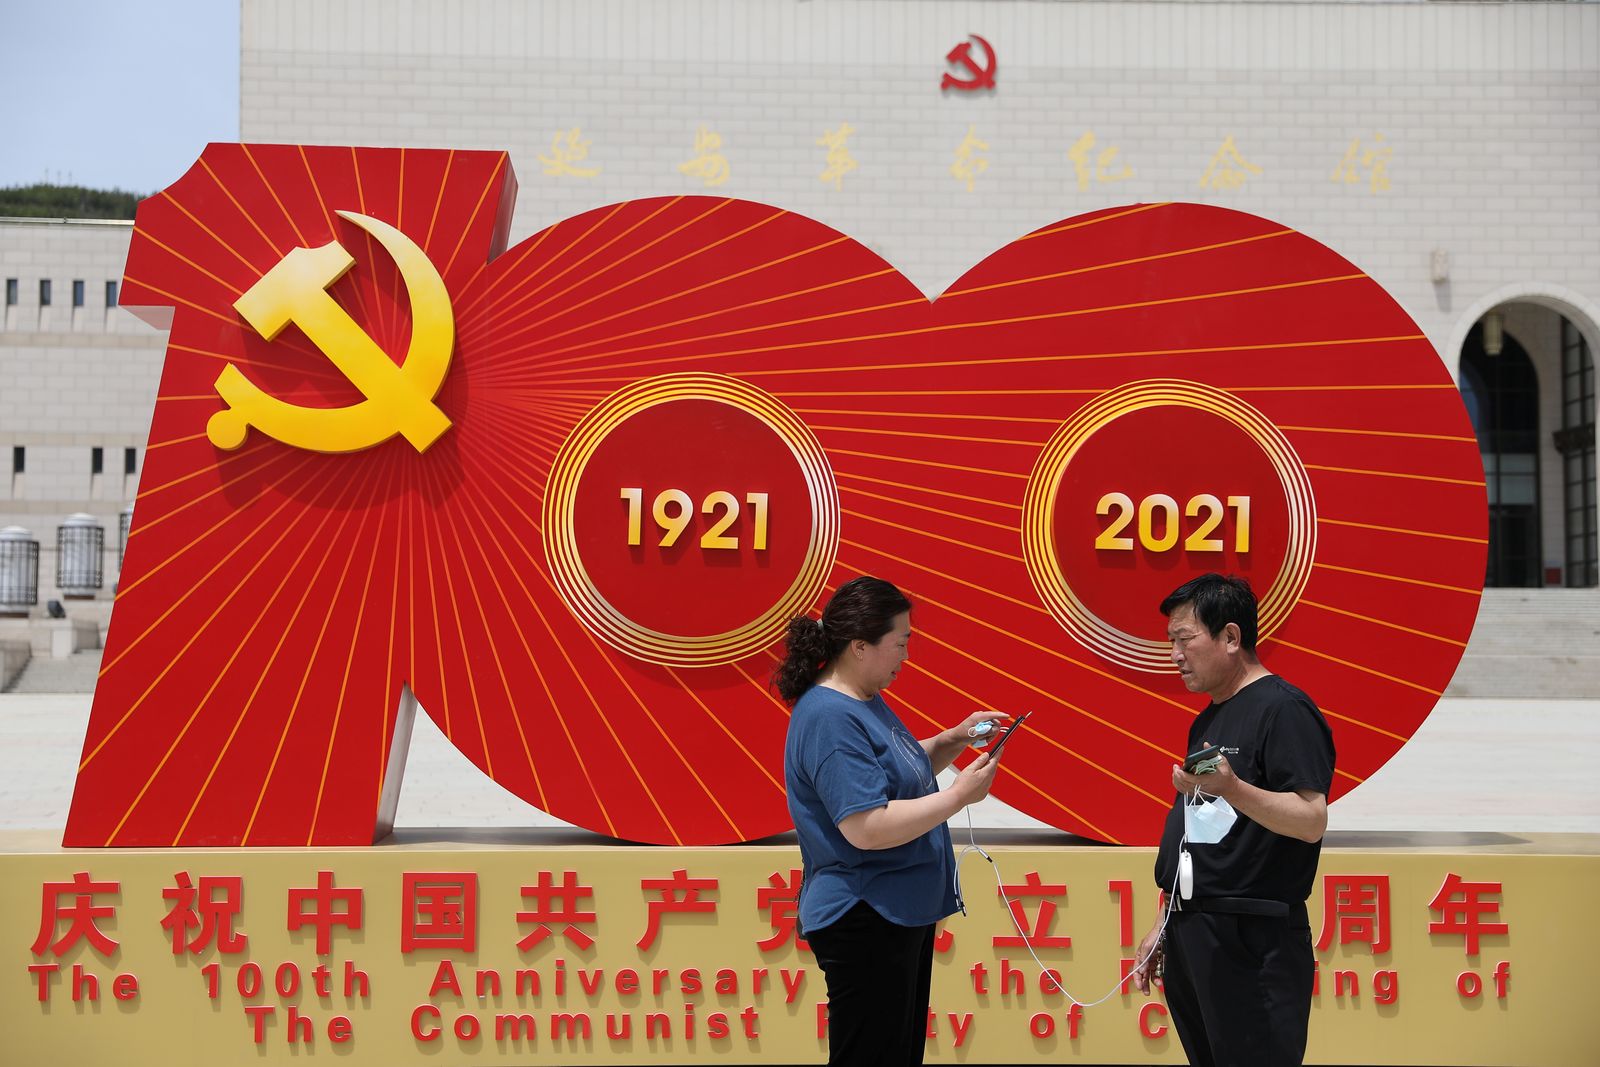 يقفان أمام شعار لمناسبة الذكرى المئوية لتأسيس الحزب الشيوعي الصيني، في يانان بمقاطعة شنشي - 10 مايو 2021 - REUTERS